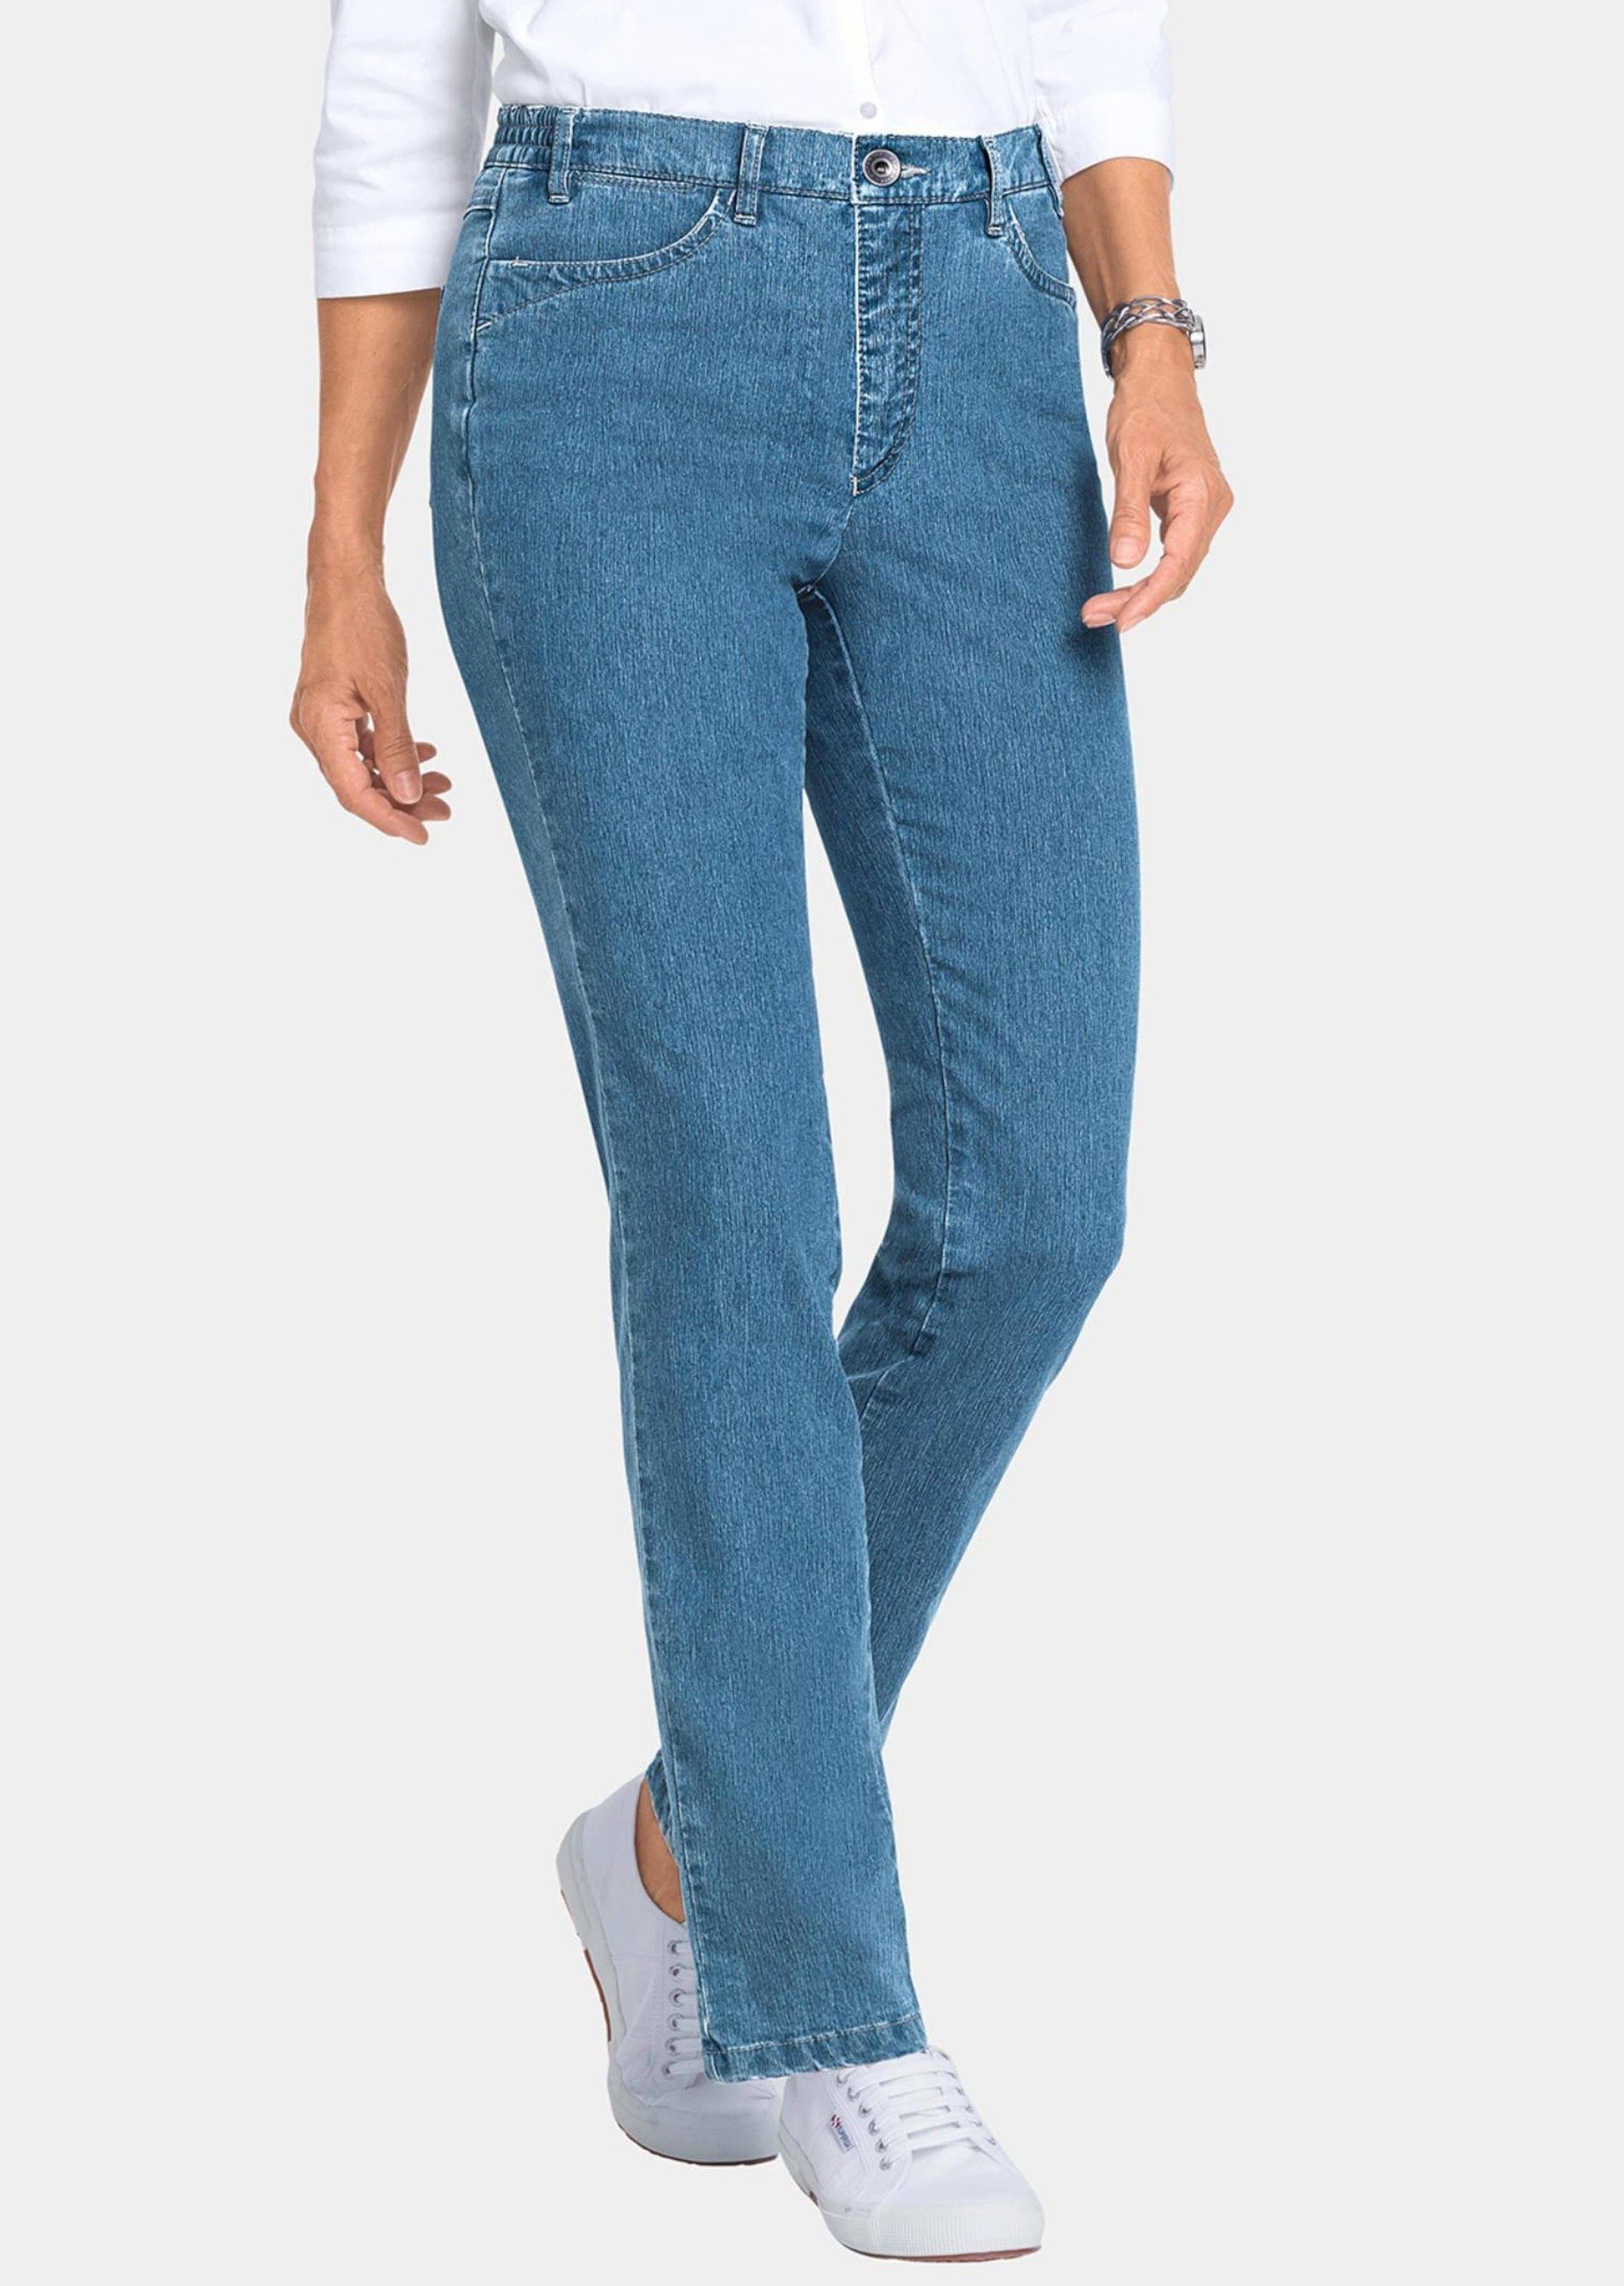 GOLDNER Bequeme Jeans Edel geschmückte Jeanshose ANNA hellblau | Slim-Fit Jeans